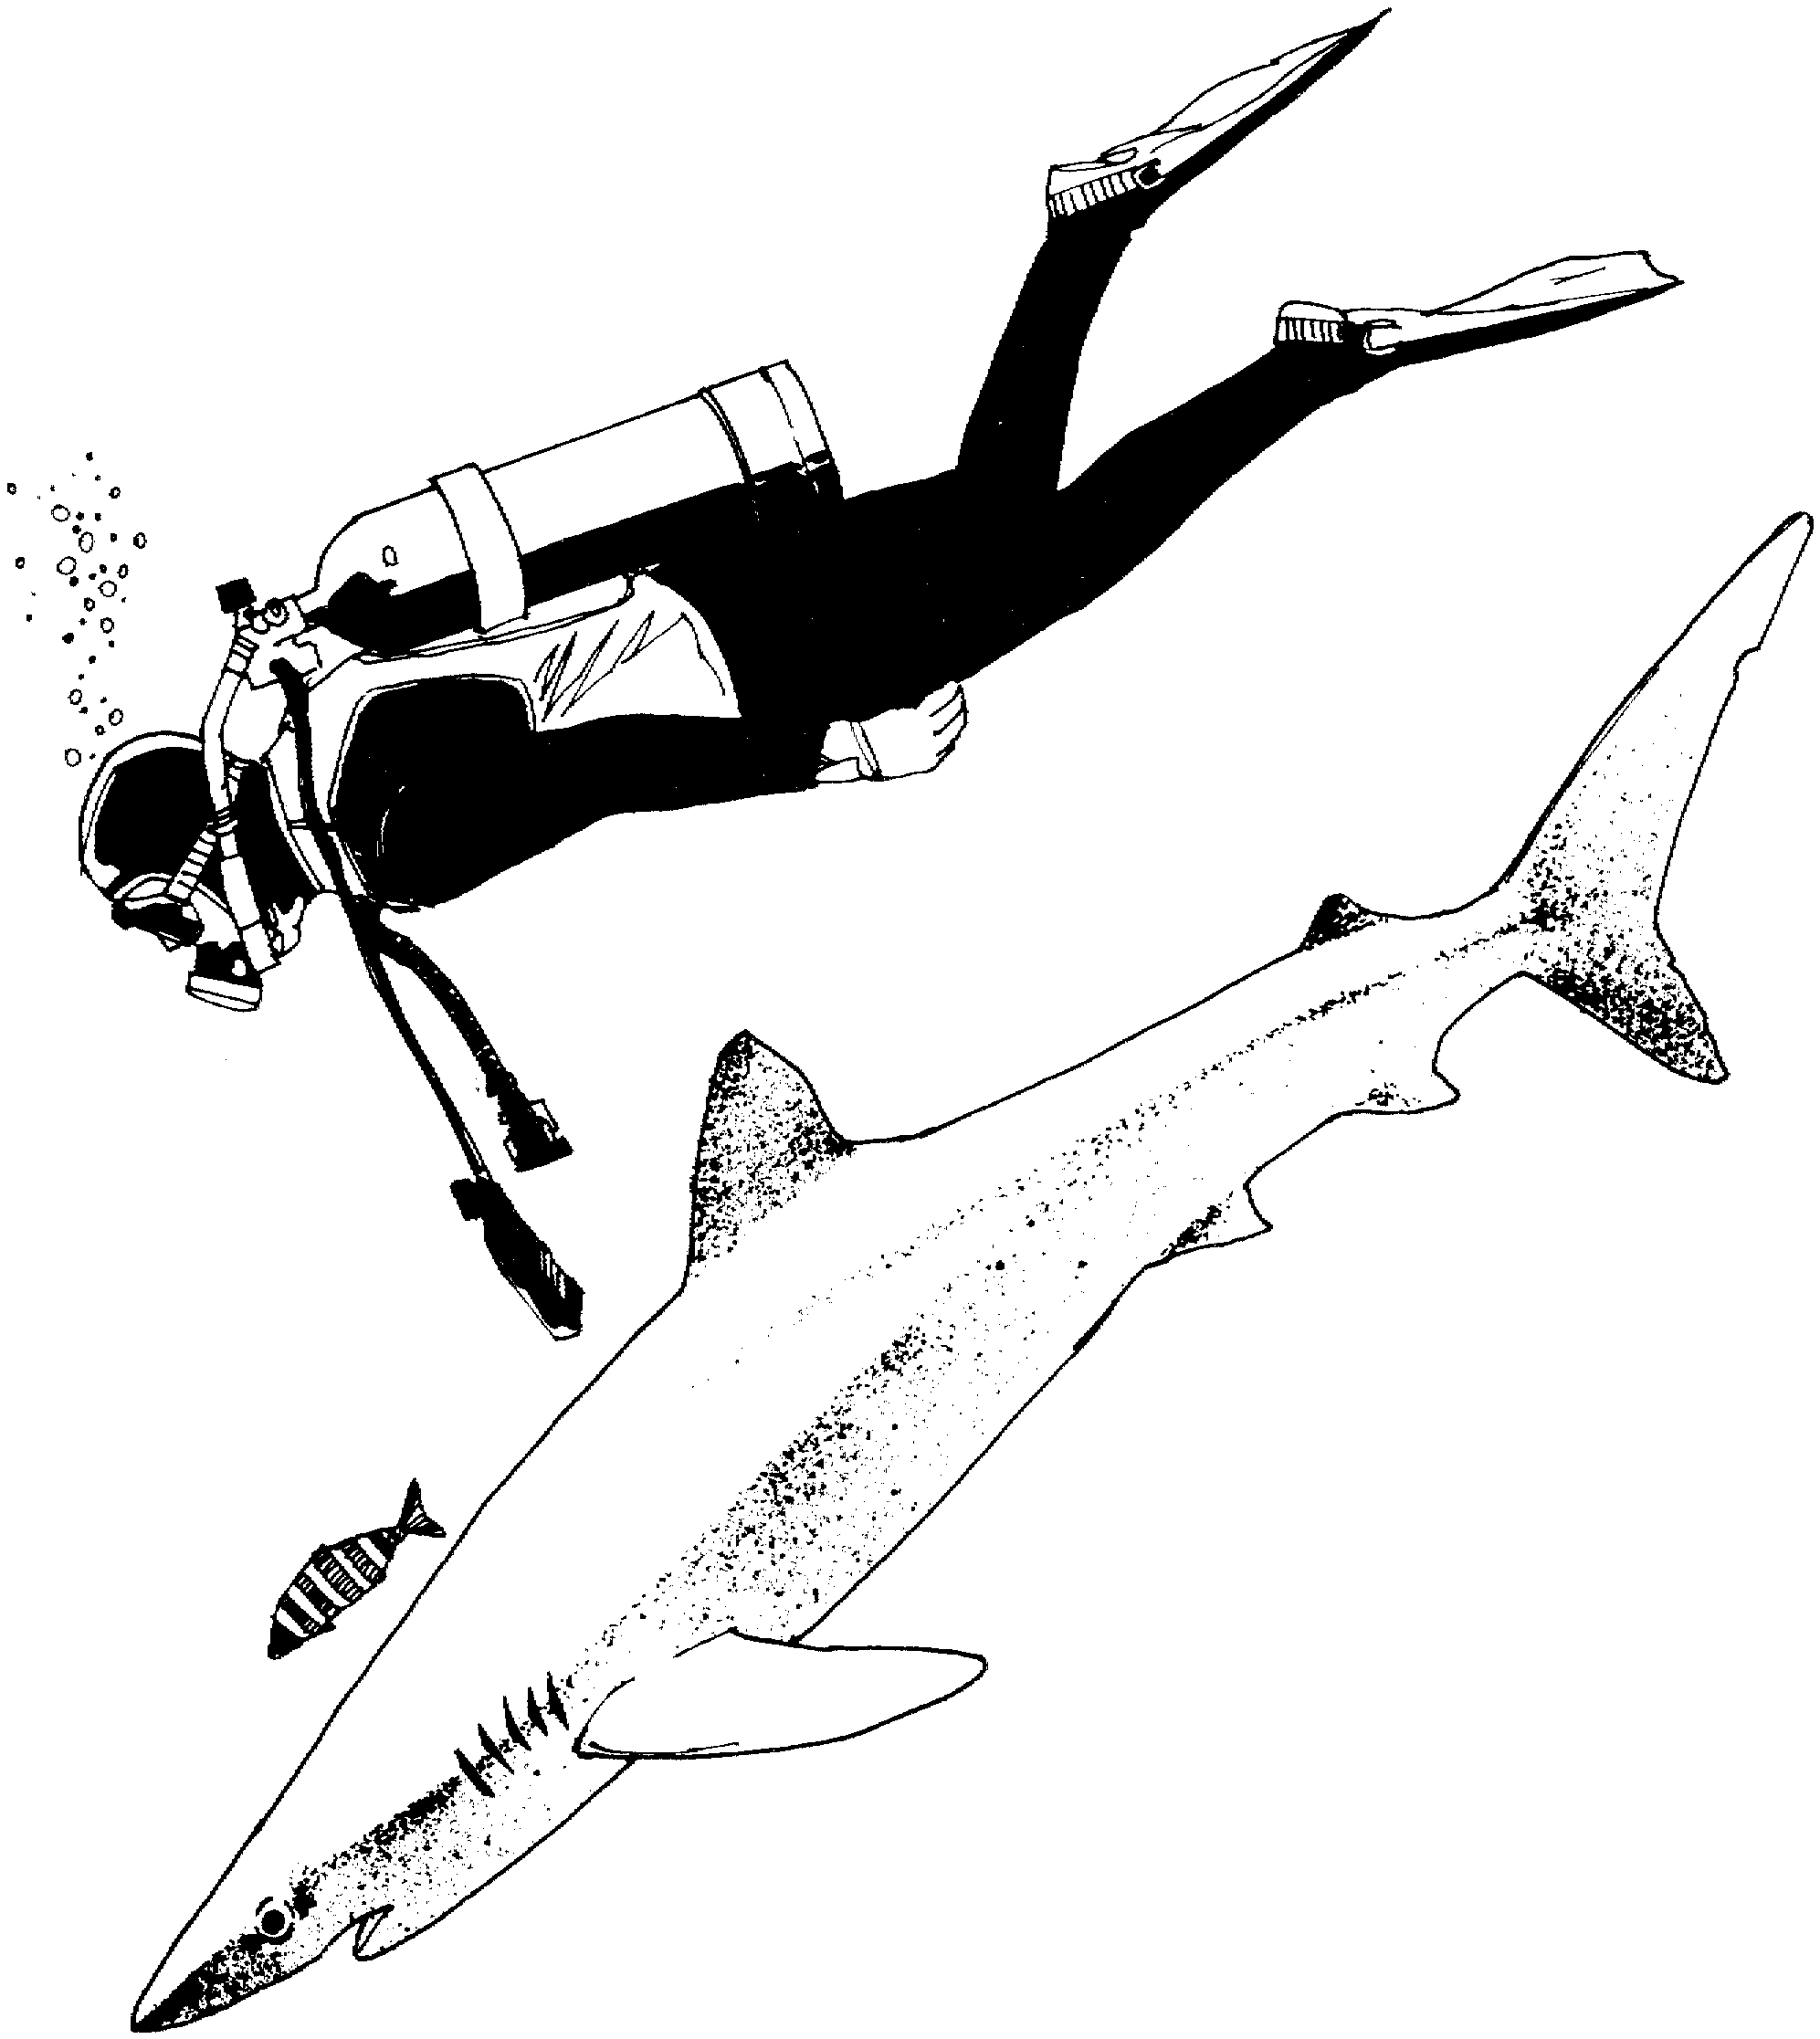 Scuba Diver Sketch at Explore collection of Scuba